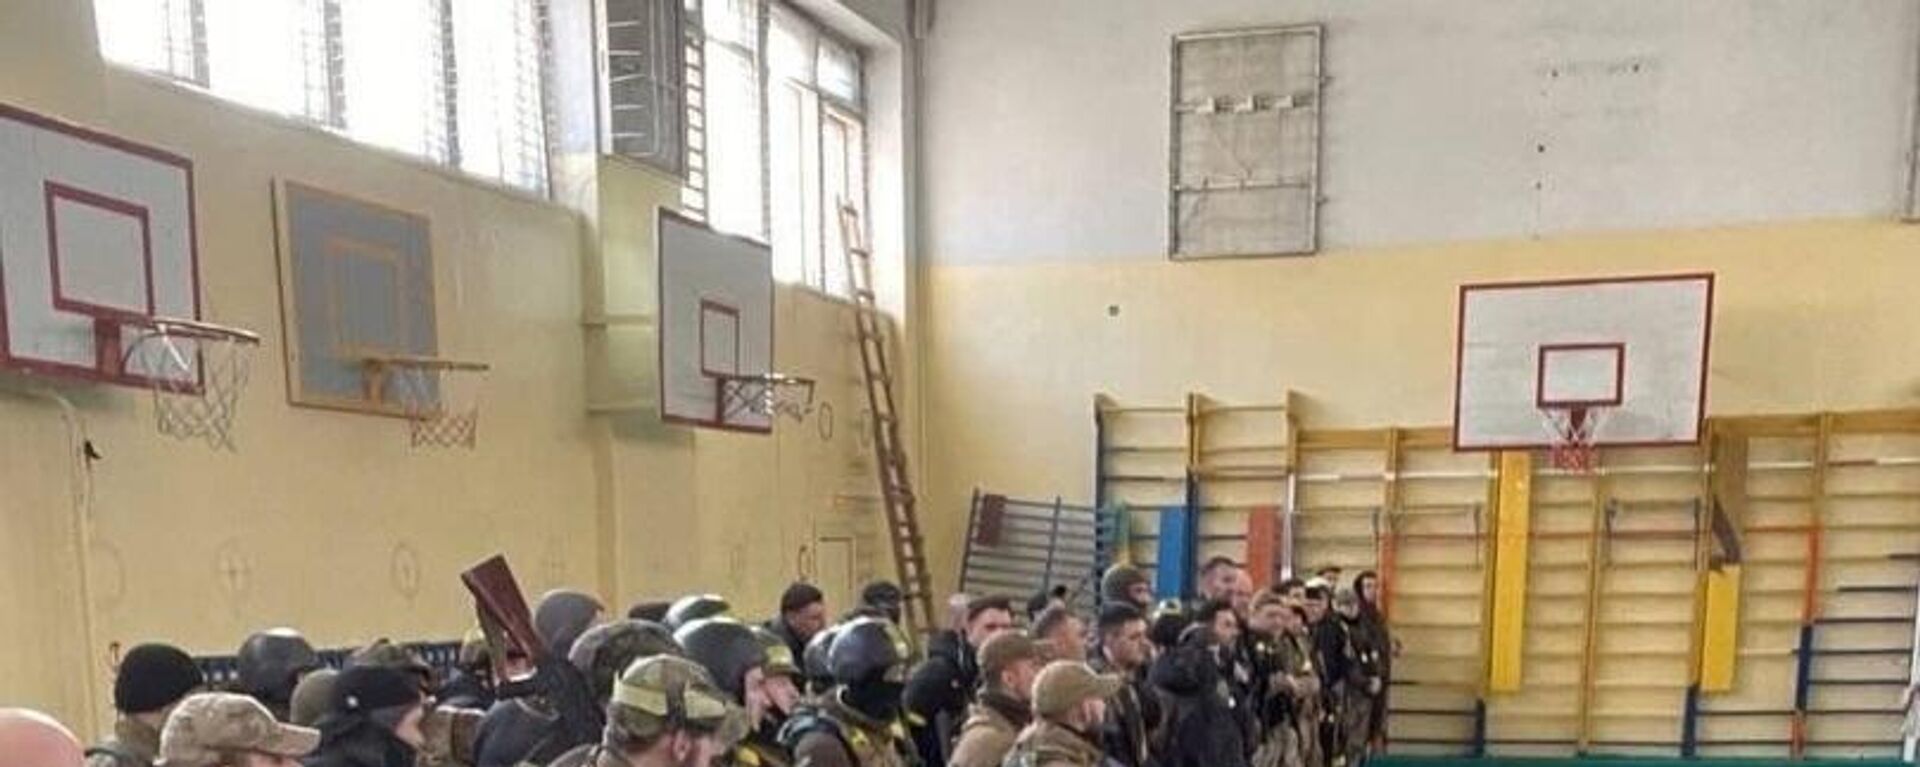 Ukrainian forces destroyed in a school gym. Cropped image of Ukrainian soldier's social media selfie. - Sputnik International, 1920, 05.08.2022